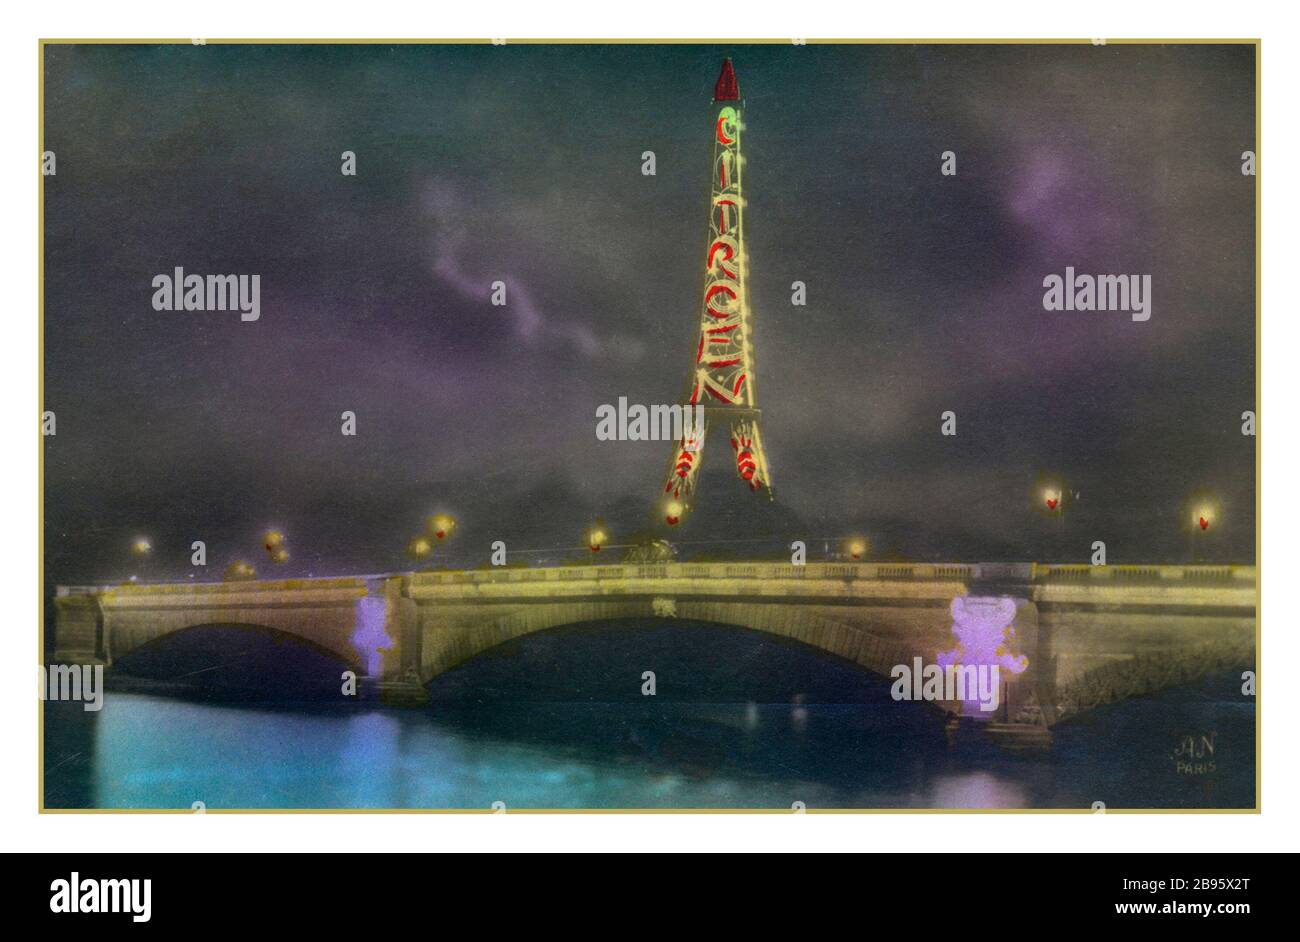 1900 's TORRE EIFFEL CITROEN Vintage Historic Postcard Torre Eiffel di notte, con la pubblicità Citroën, 1925 Parigi Francia la società automobilistica Citroen ha utilizzato il punto di riferimento di Parigi per promuovere il loro marchio per quasi un decennio, con 250,000 luci fissate alla torre. Era la pubblicità più grande del mondo Foto Stock